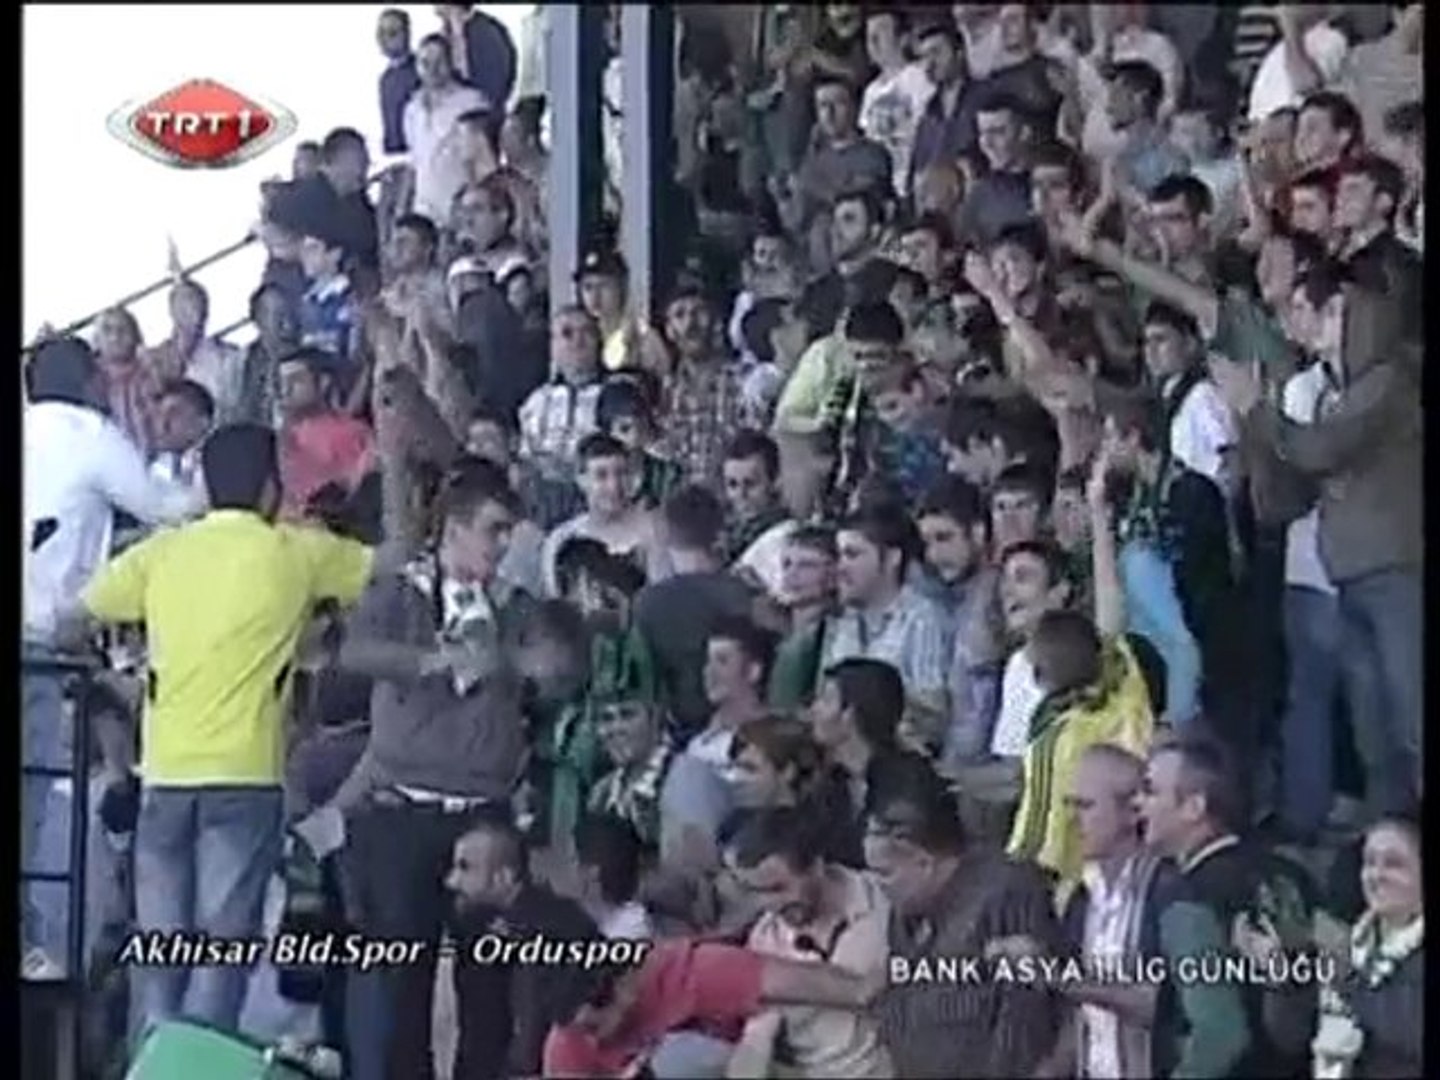 Akhisarspor - Orduspor Geniş Maç Özeti ve Yorumları - Dailymotion Video